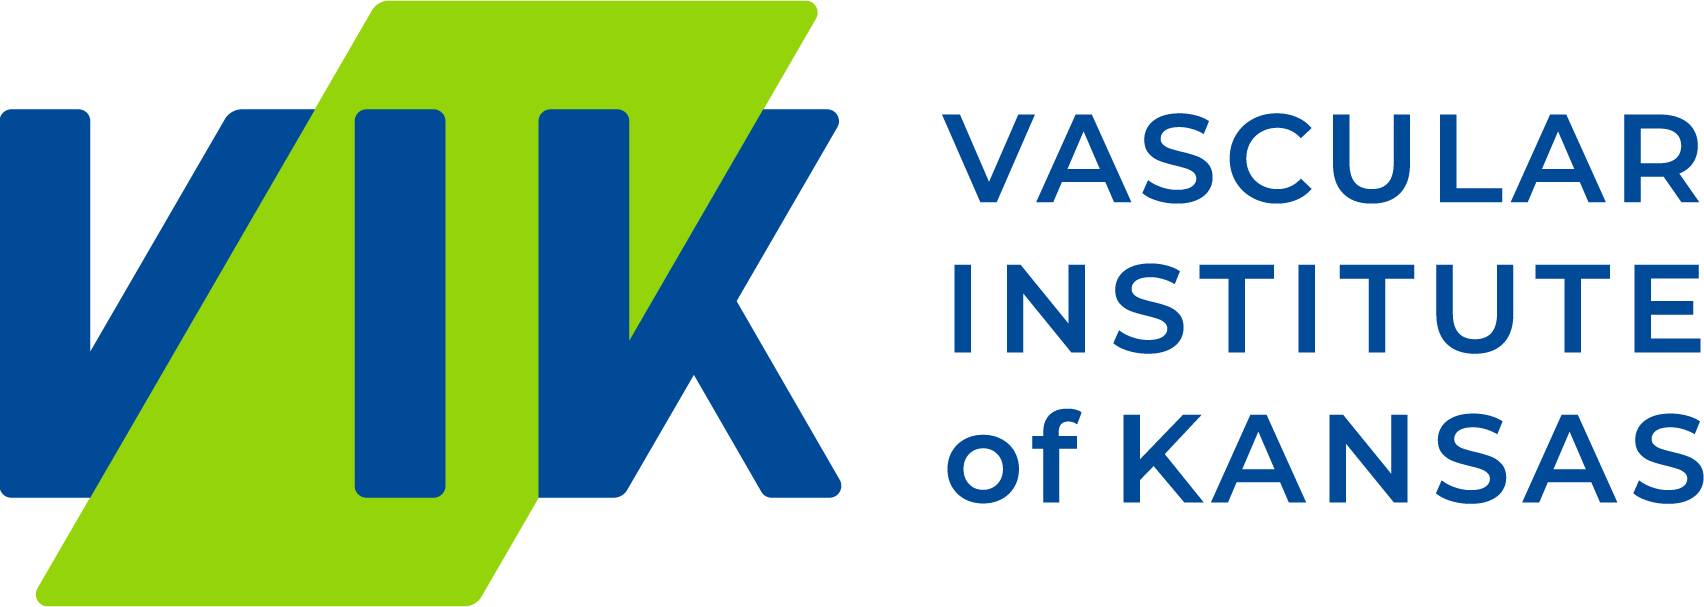 Vascular Institute of Kansas